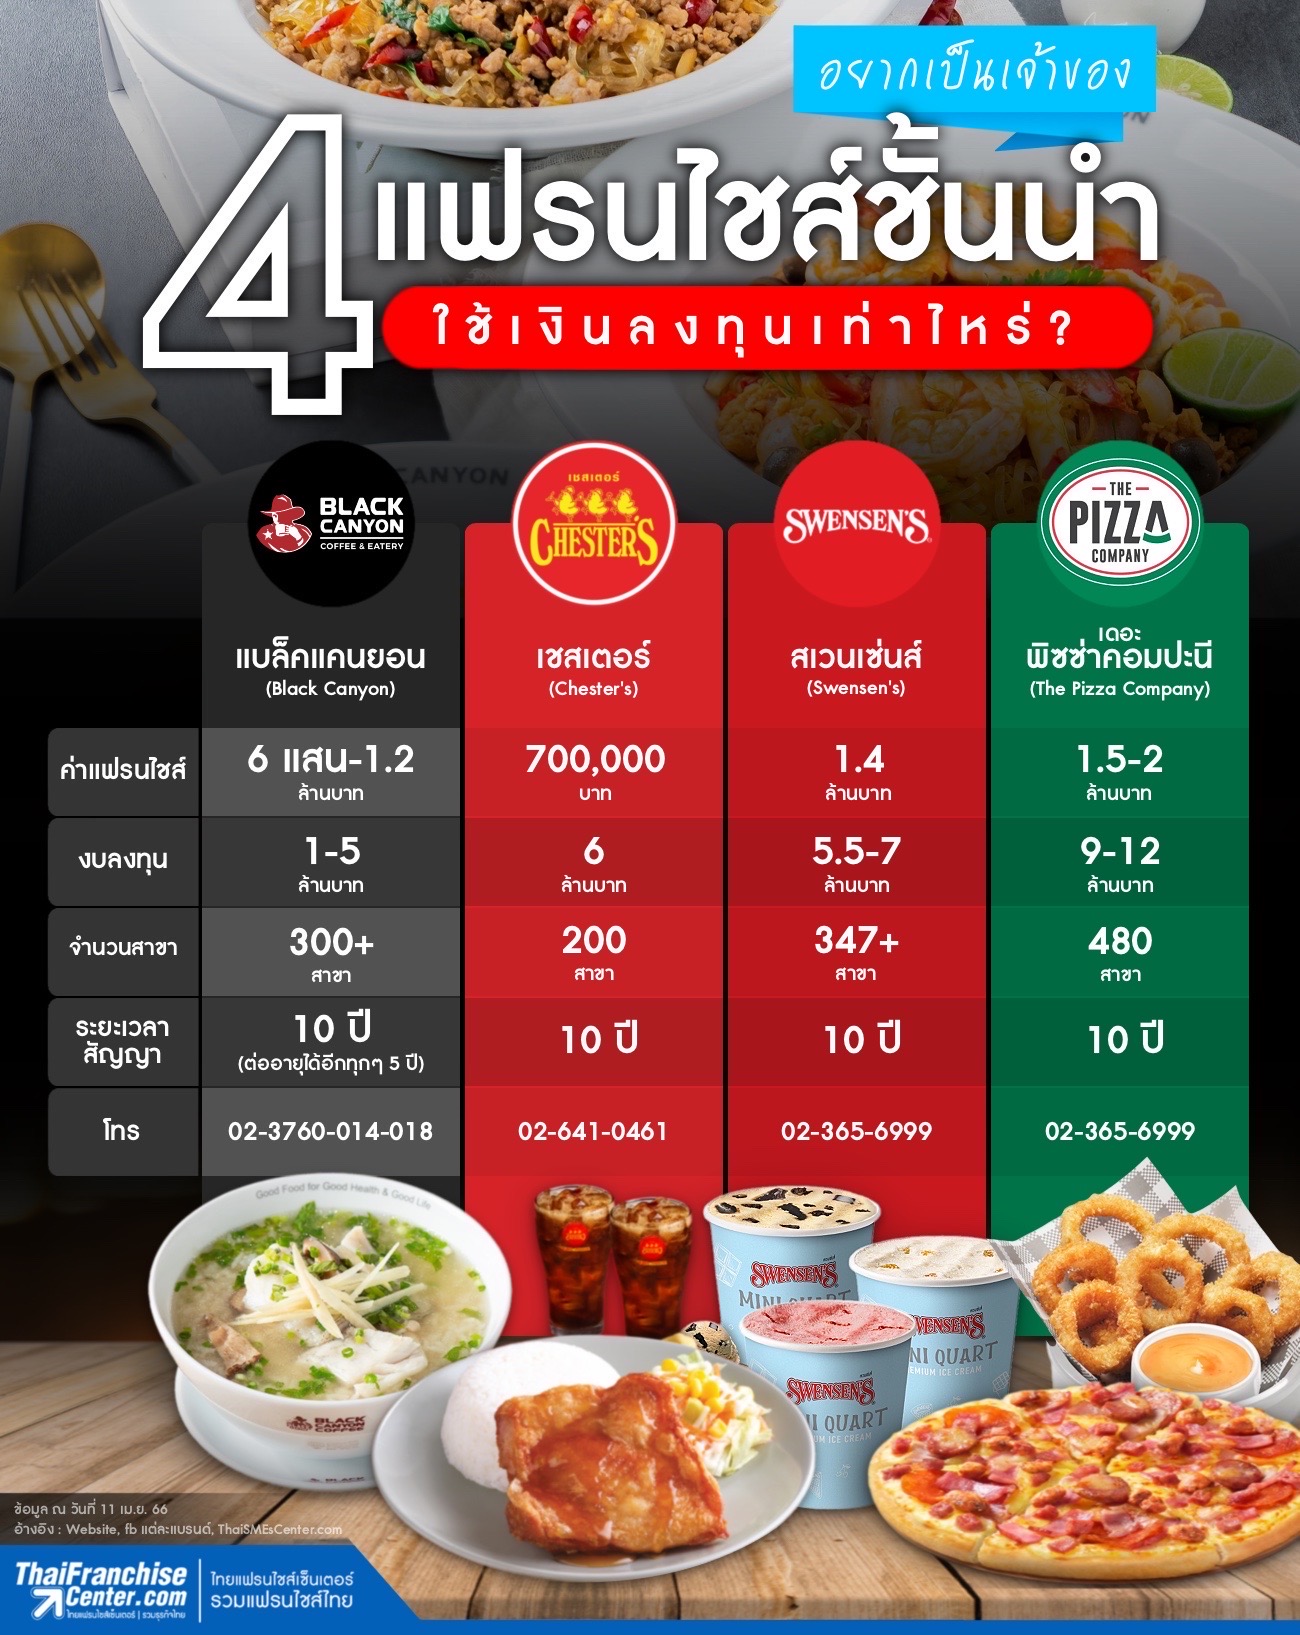 อยากเป็นเจ้าของ 4 แฟรนไชส์ชั้นนำ ใช้เงินลงทุนเท่าไหร่? By  Thaifranchisecenter.Com